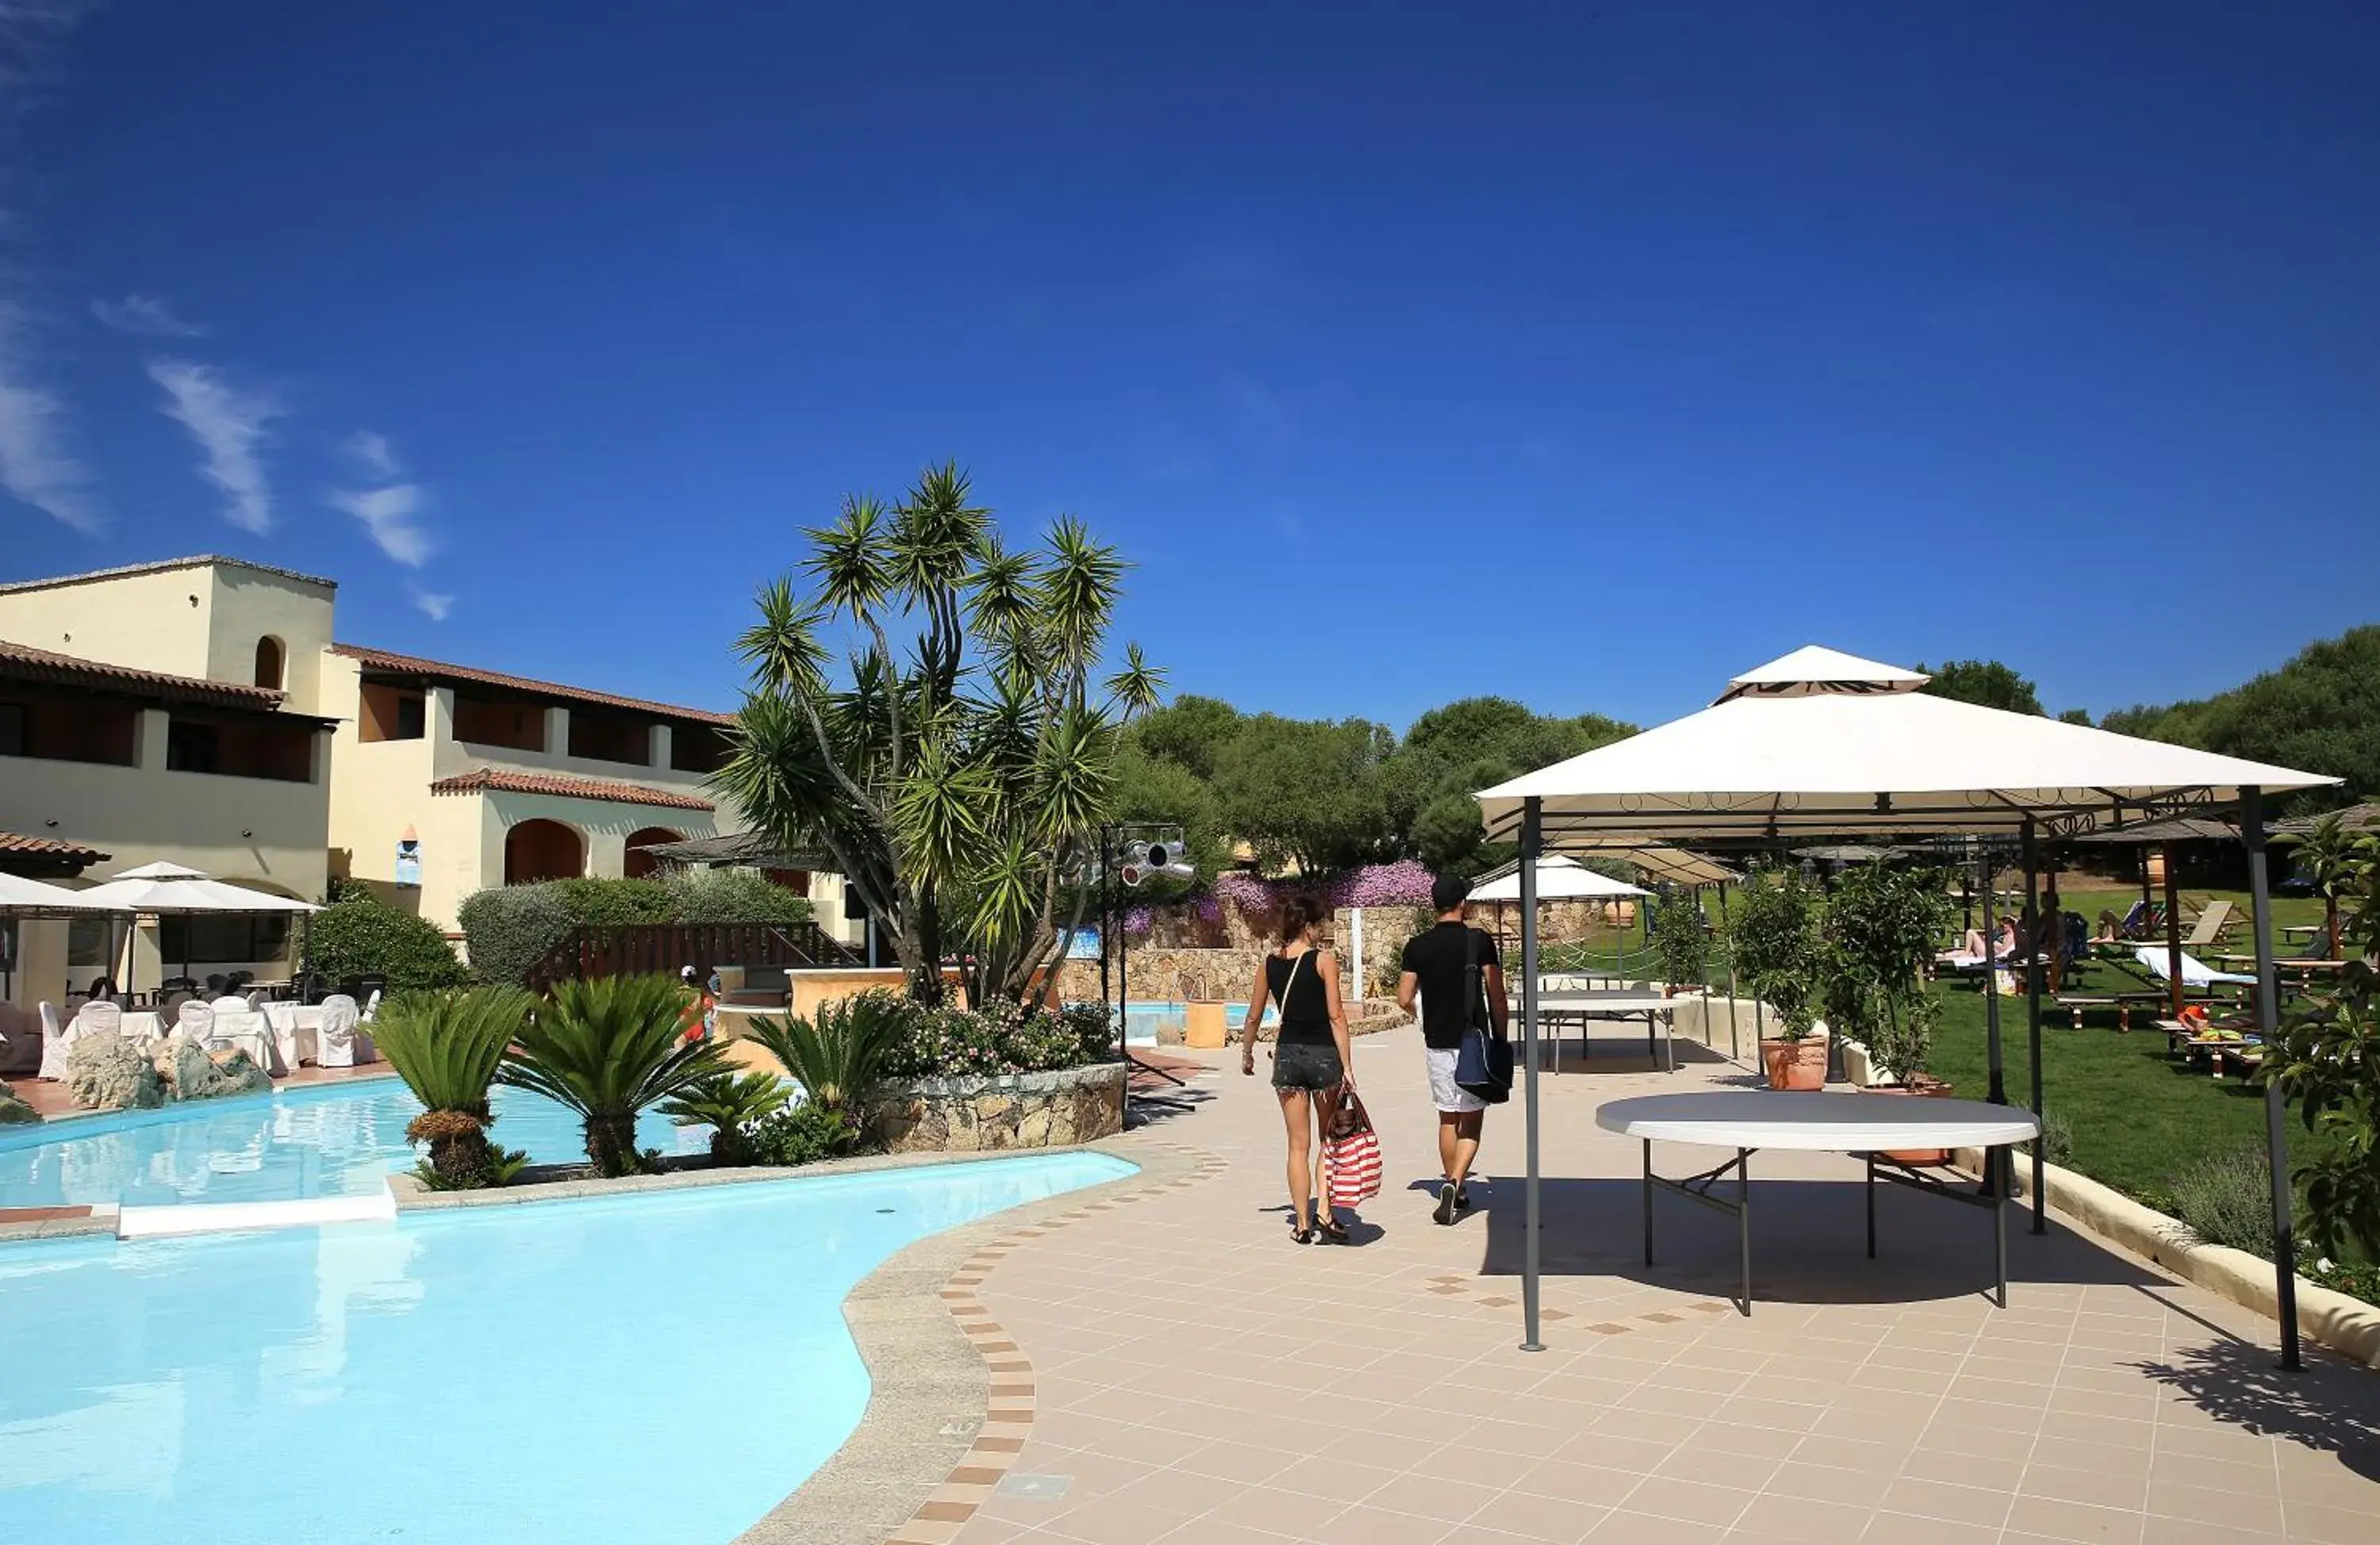 Swimming pool in Hotel Speraesole